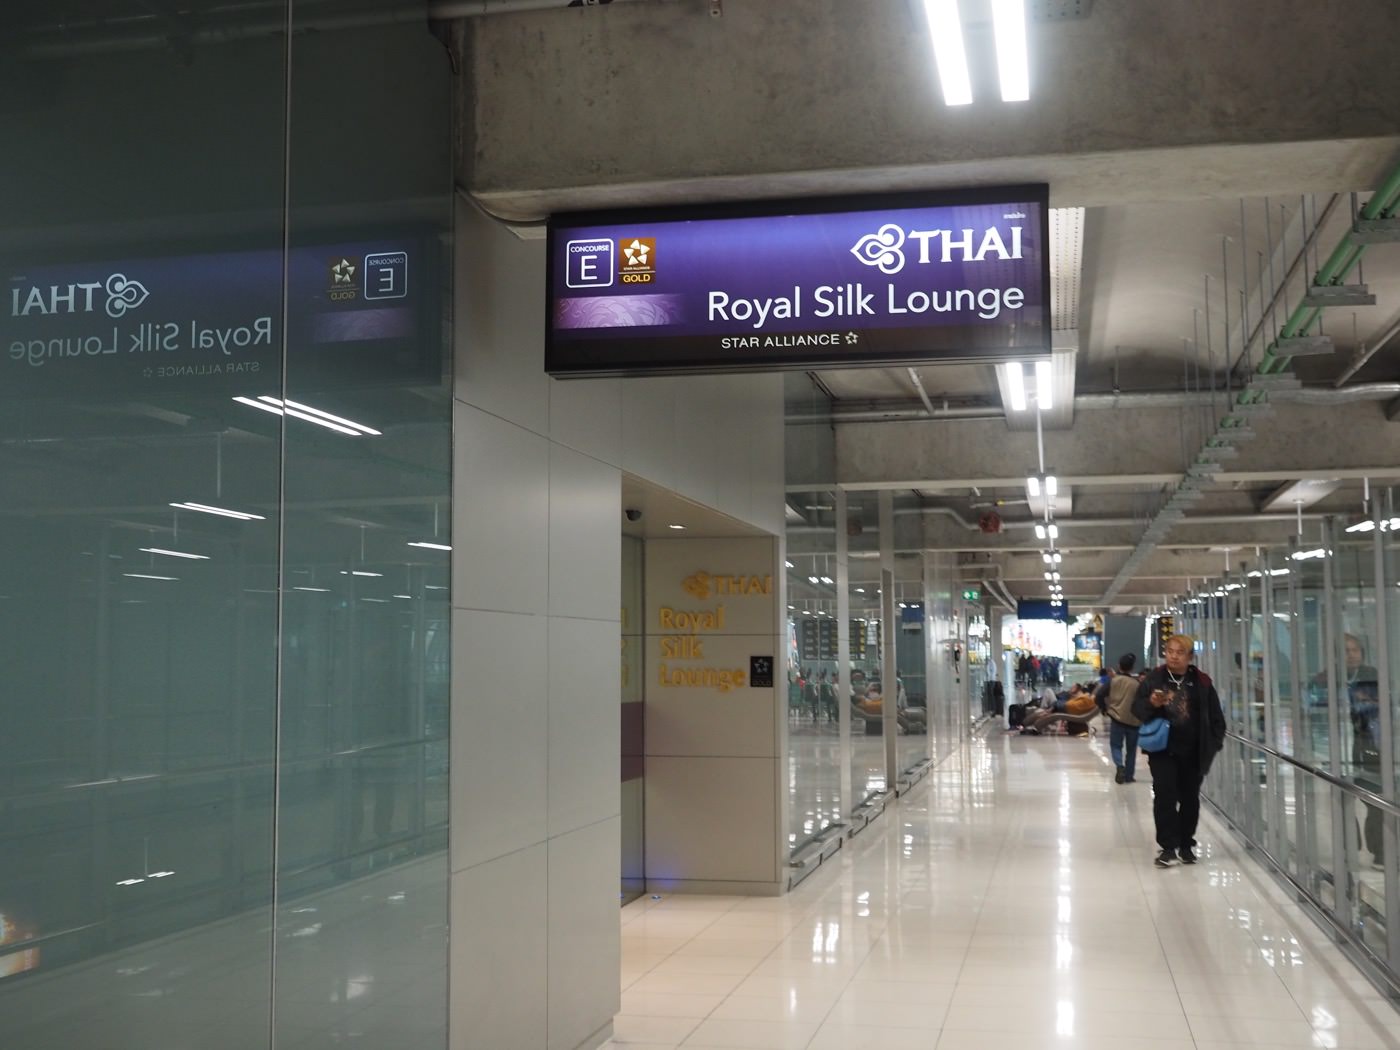 貴賓室 泰國曼谷 泰國航空 Thai Royal Silk Lounge - Gate E - 一口冒險 Bitesized Adventure